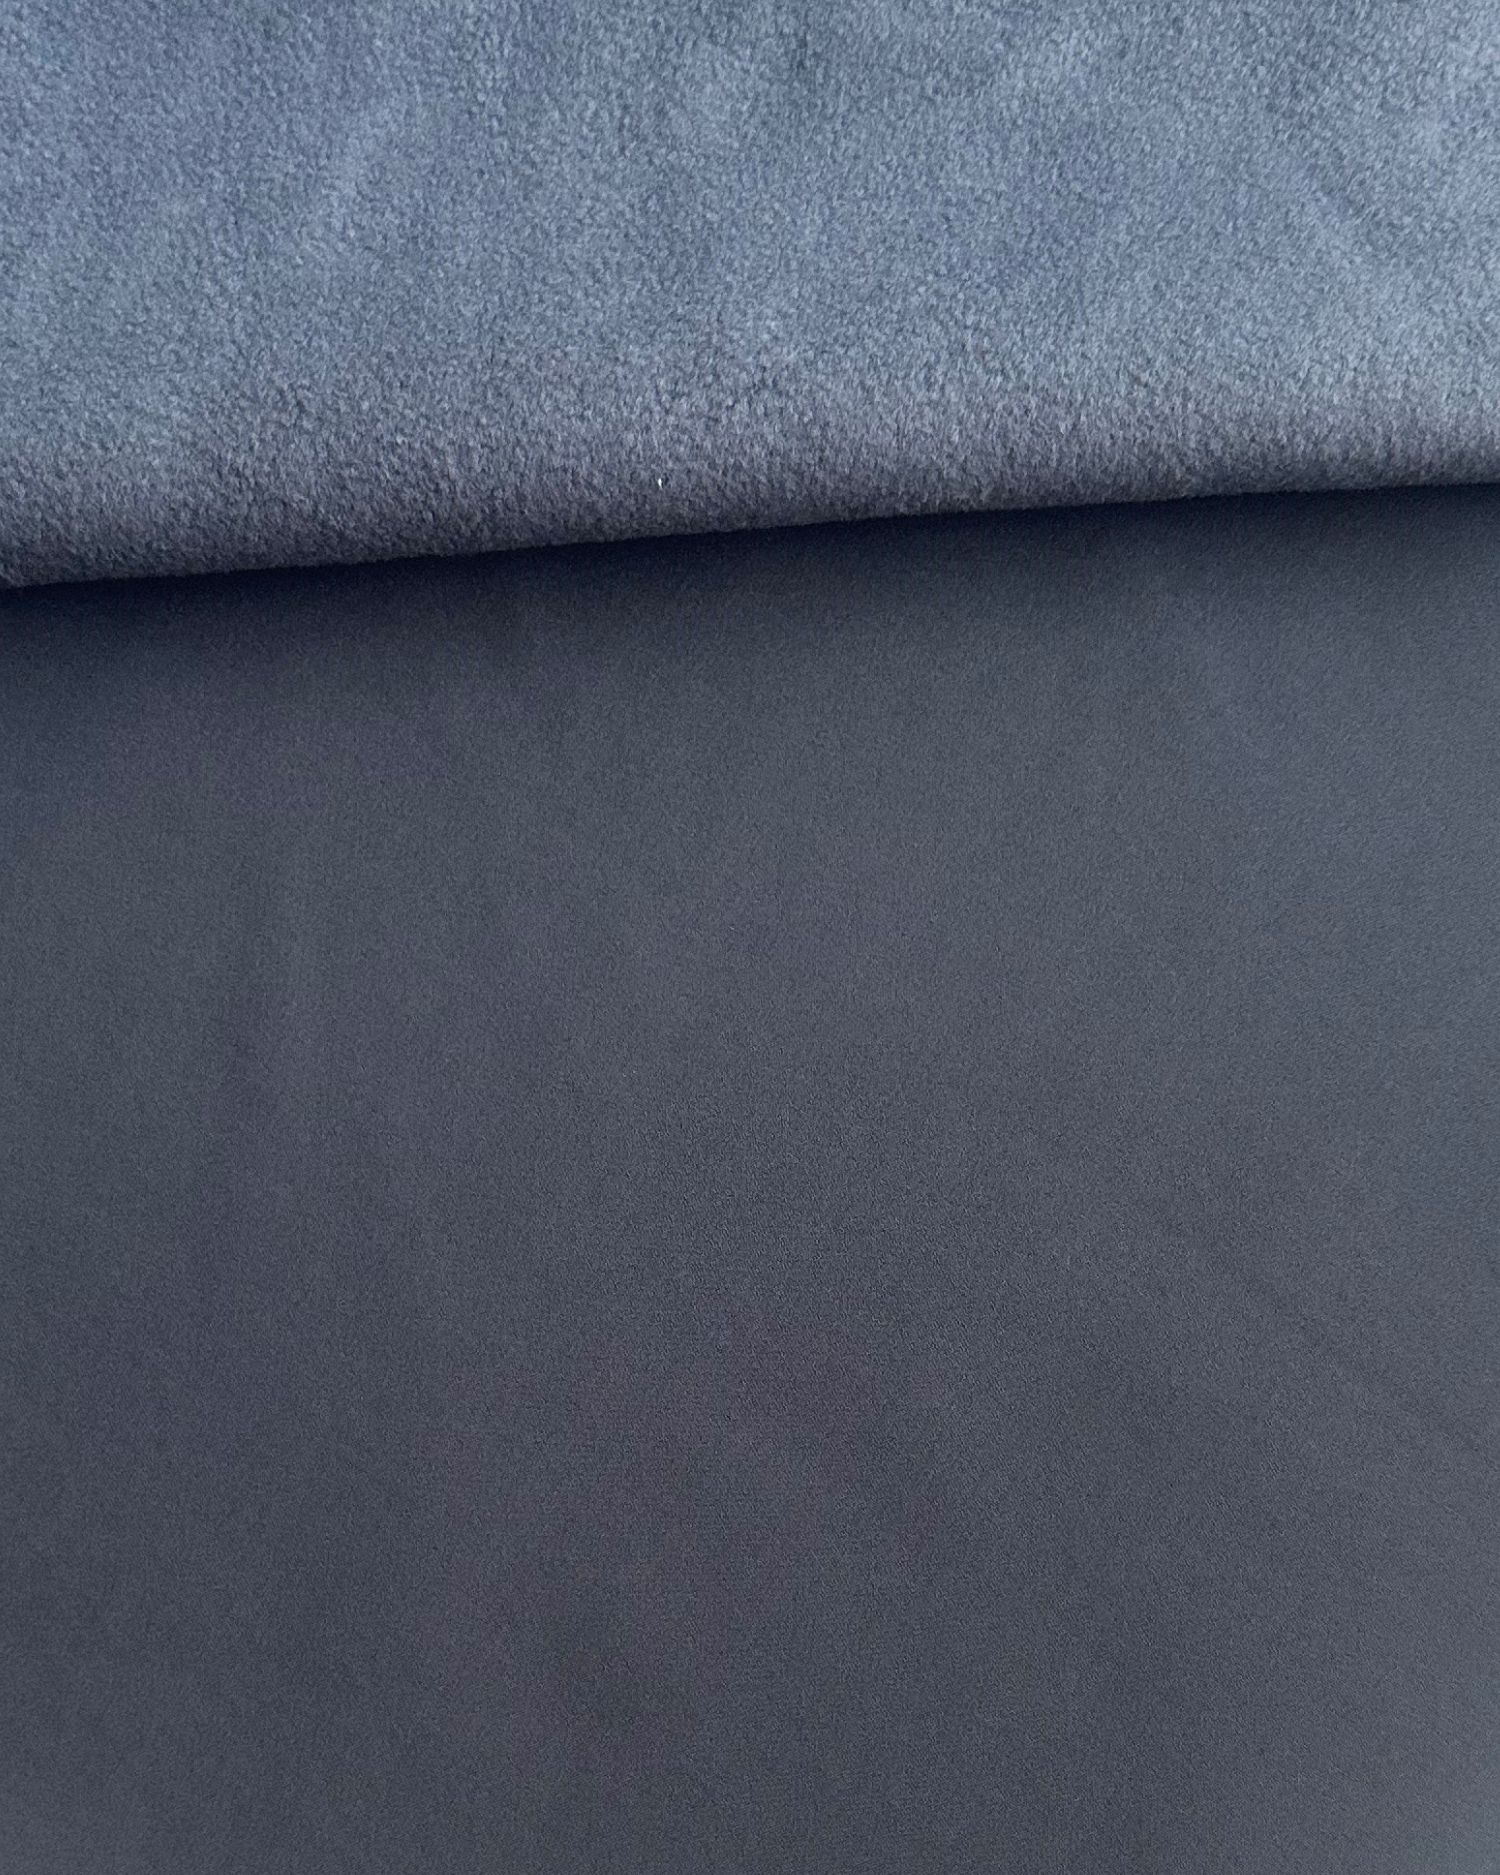 Softshell zimní s fleecem, 1 metr, tmavě šedý (antracitový)